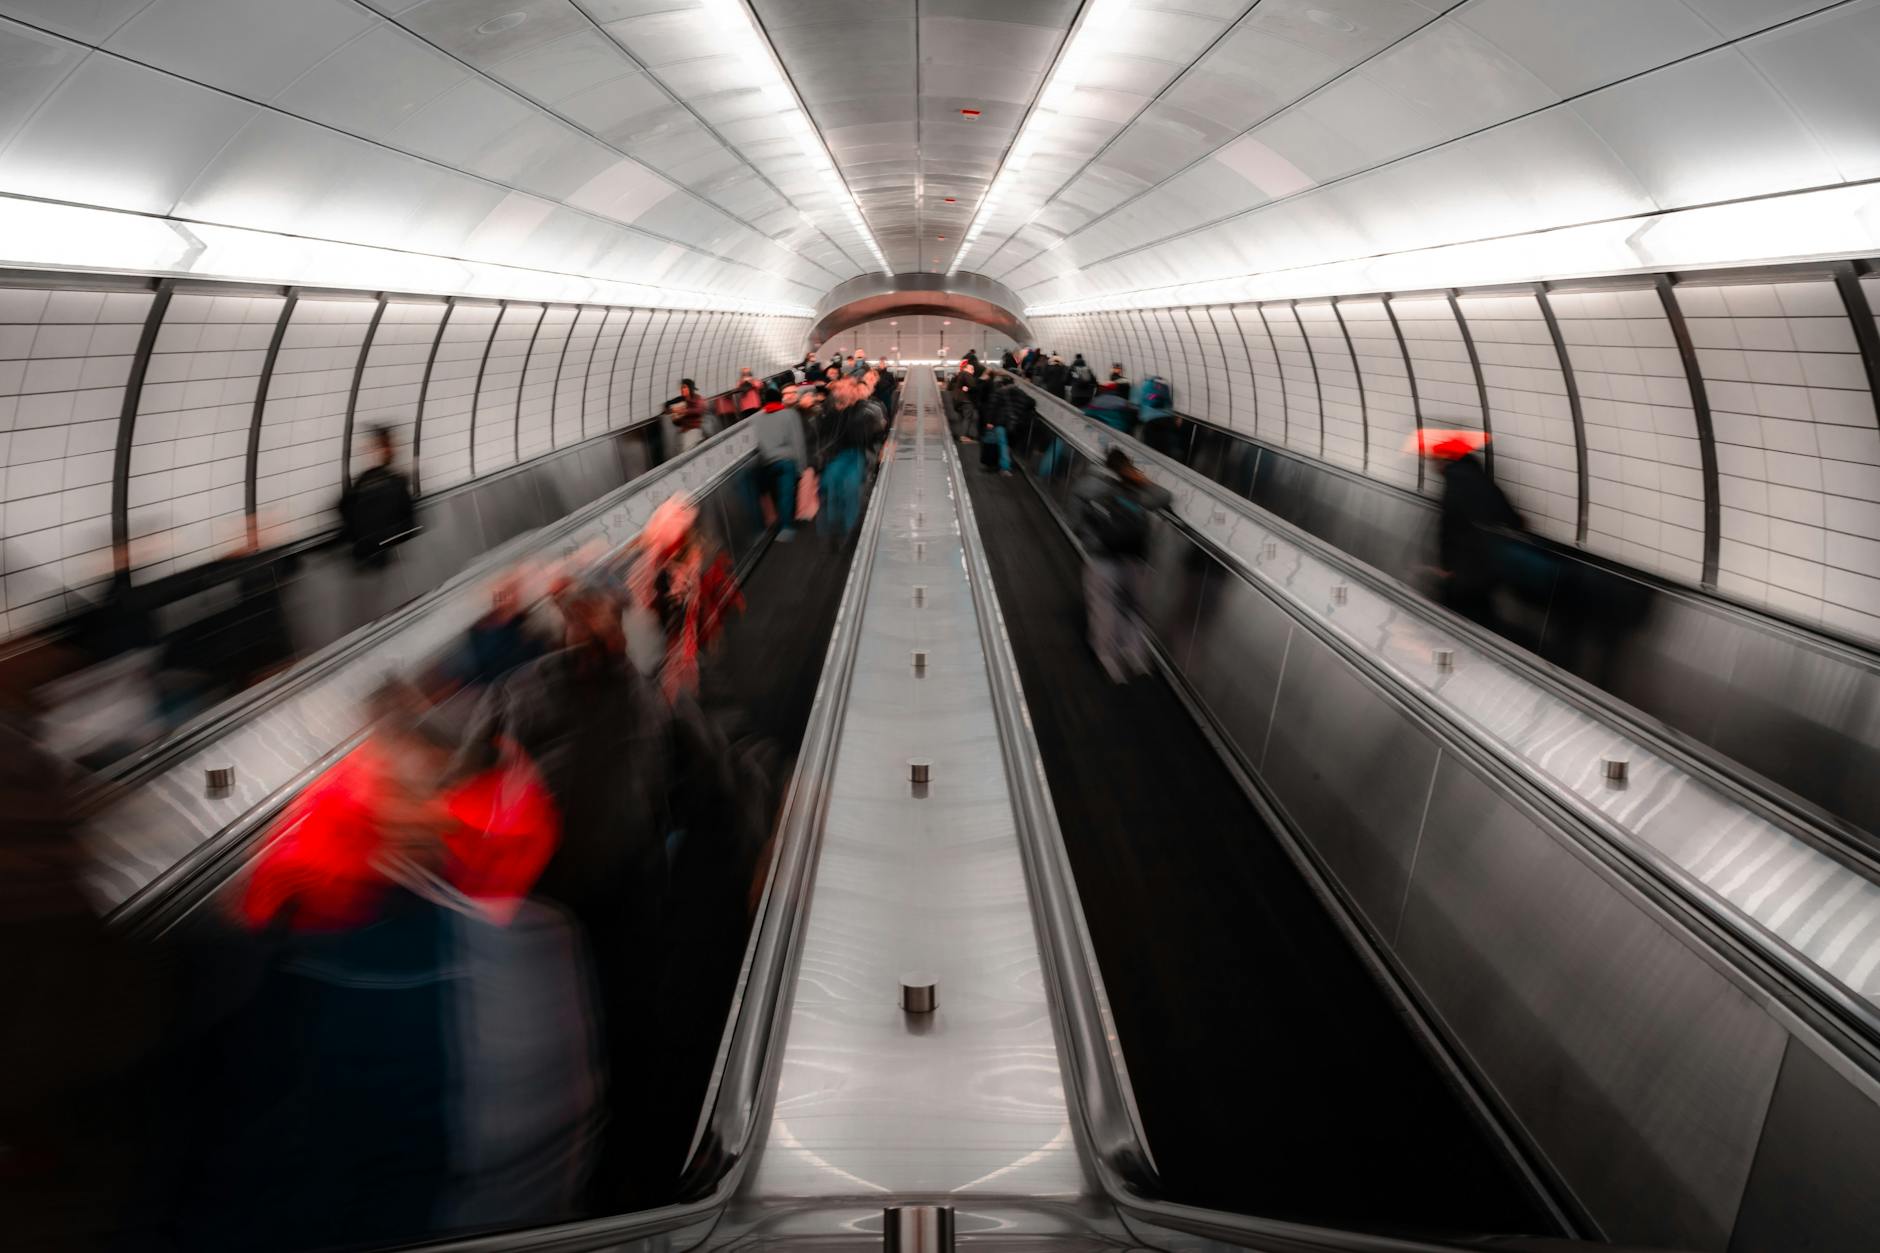 Personnes anonymes sur un escalator dans un métro moderne